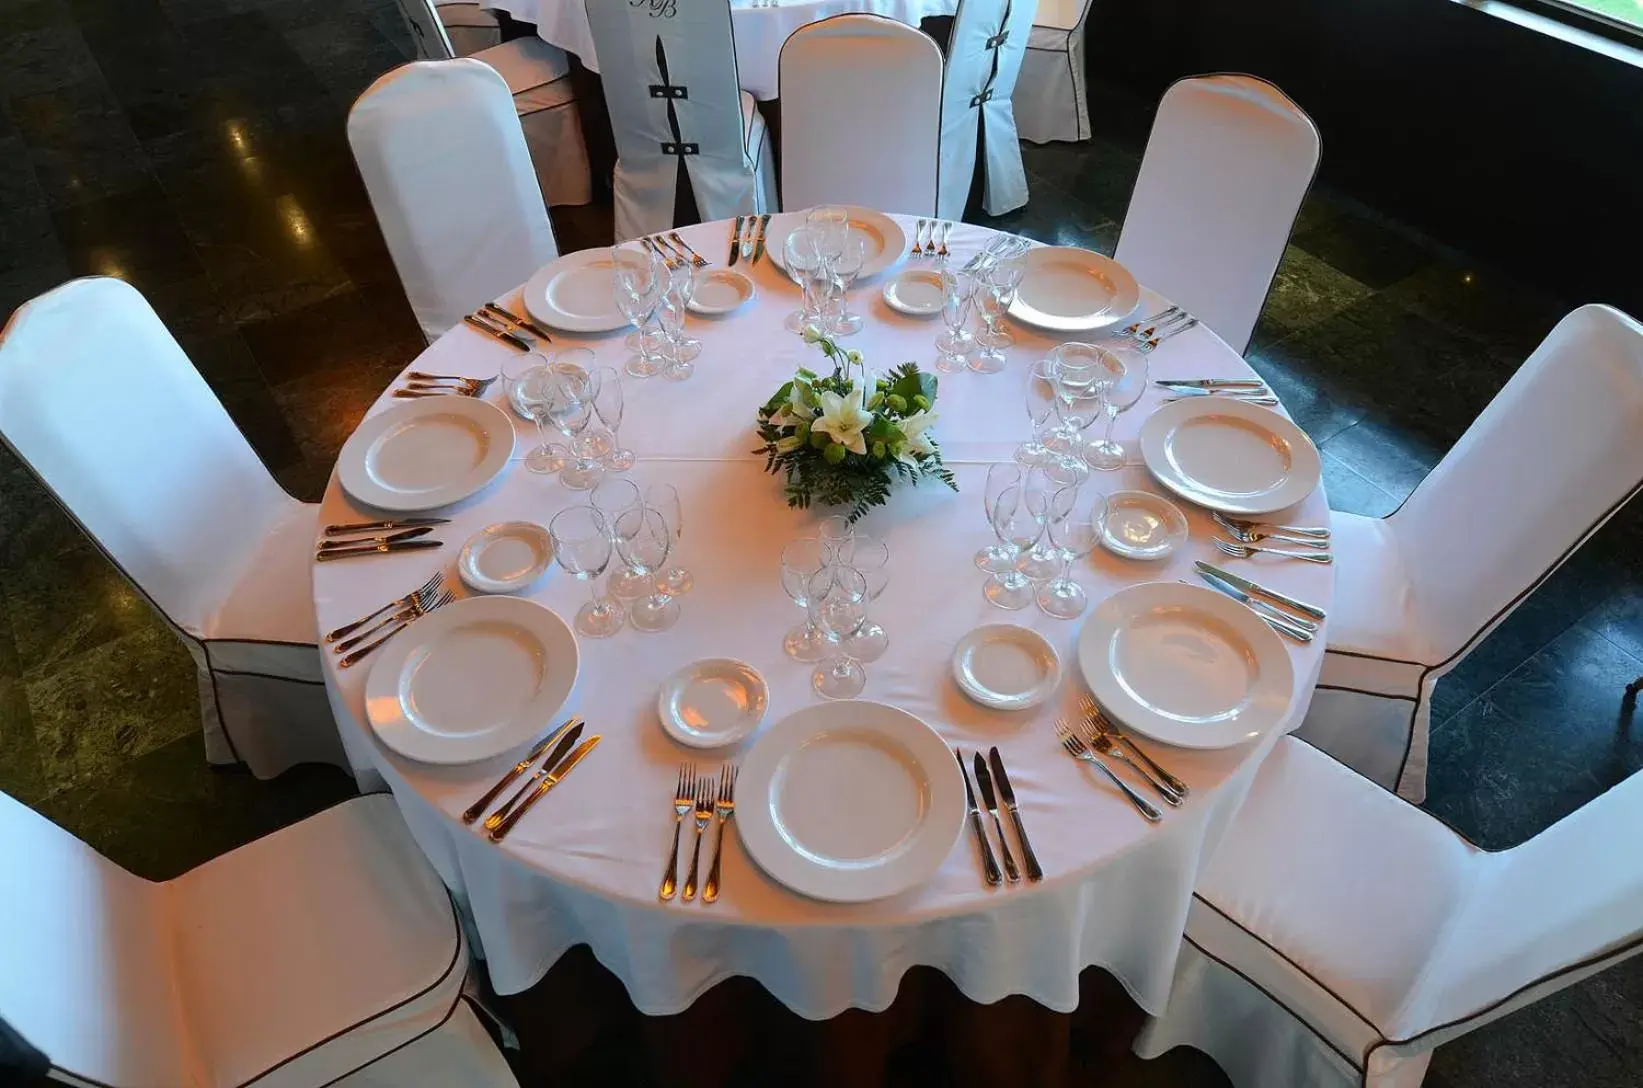 Banquet/Function facilities, Restaurant/Places to Eat in Hospedium Hotel Mirador de Gredos